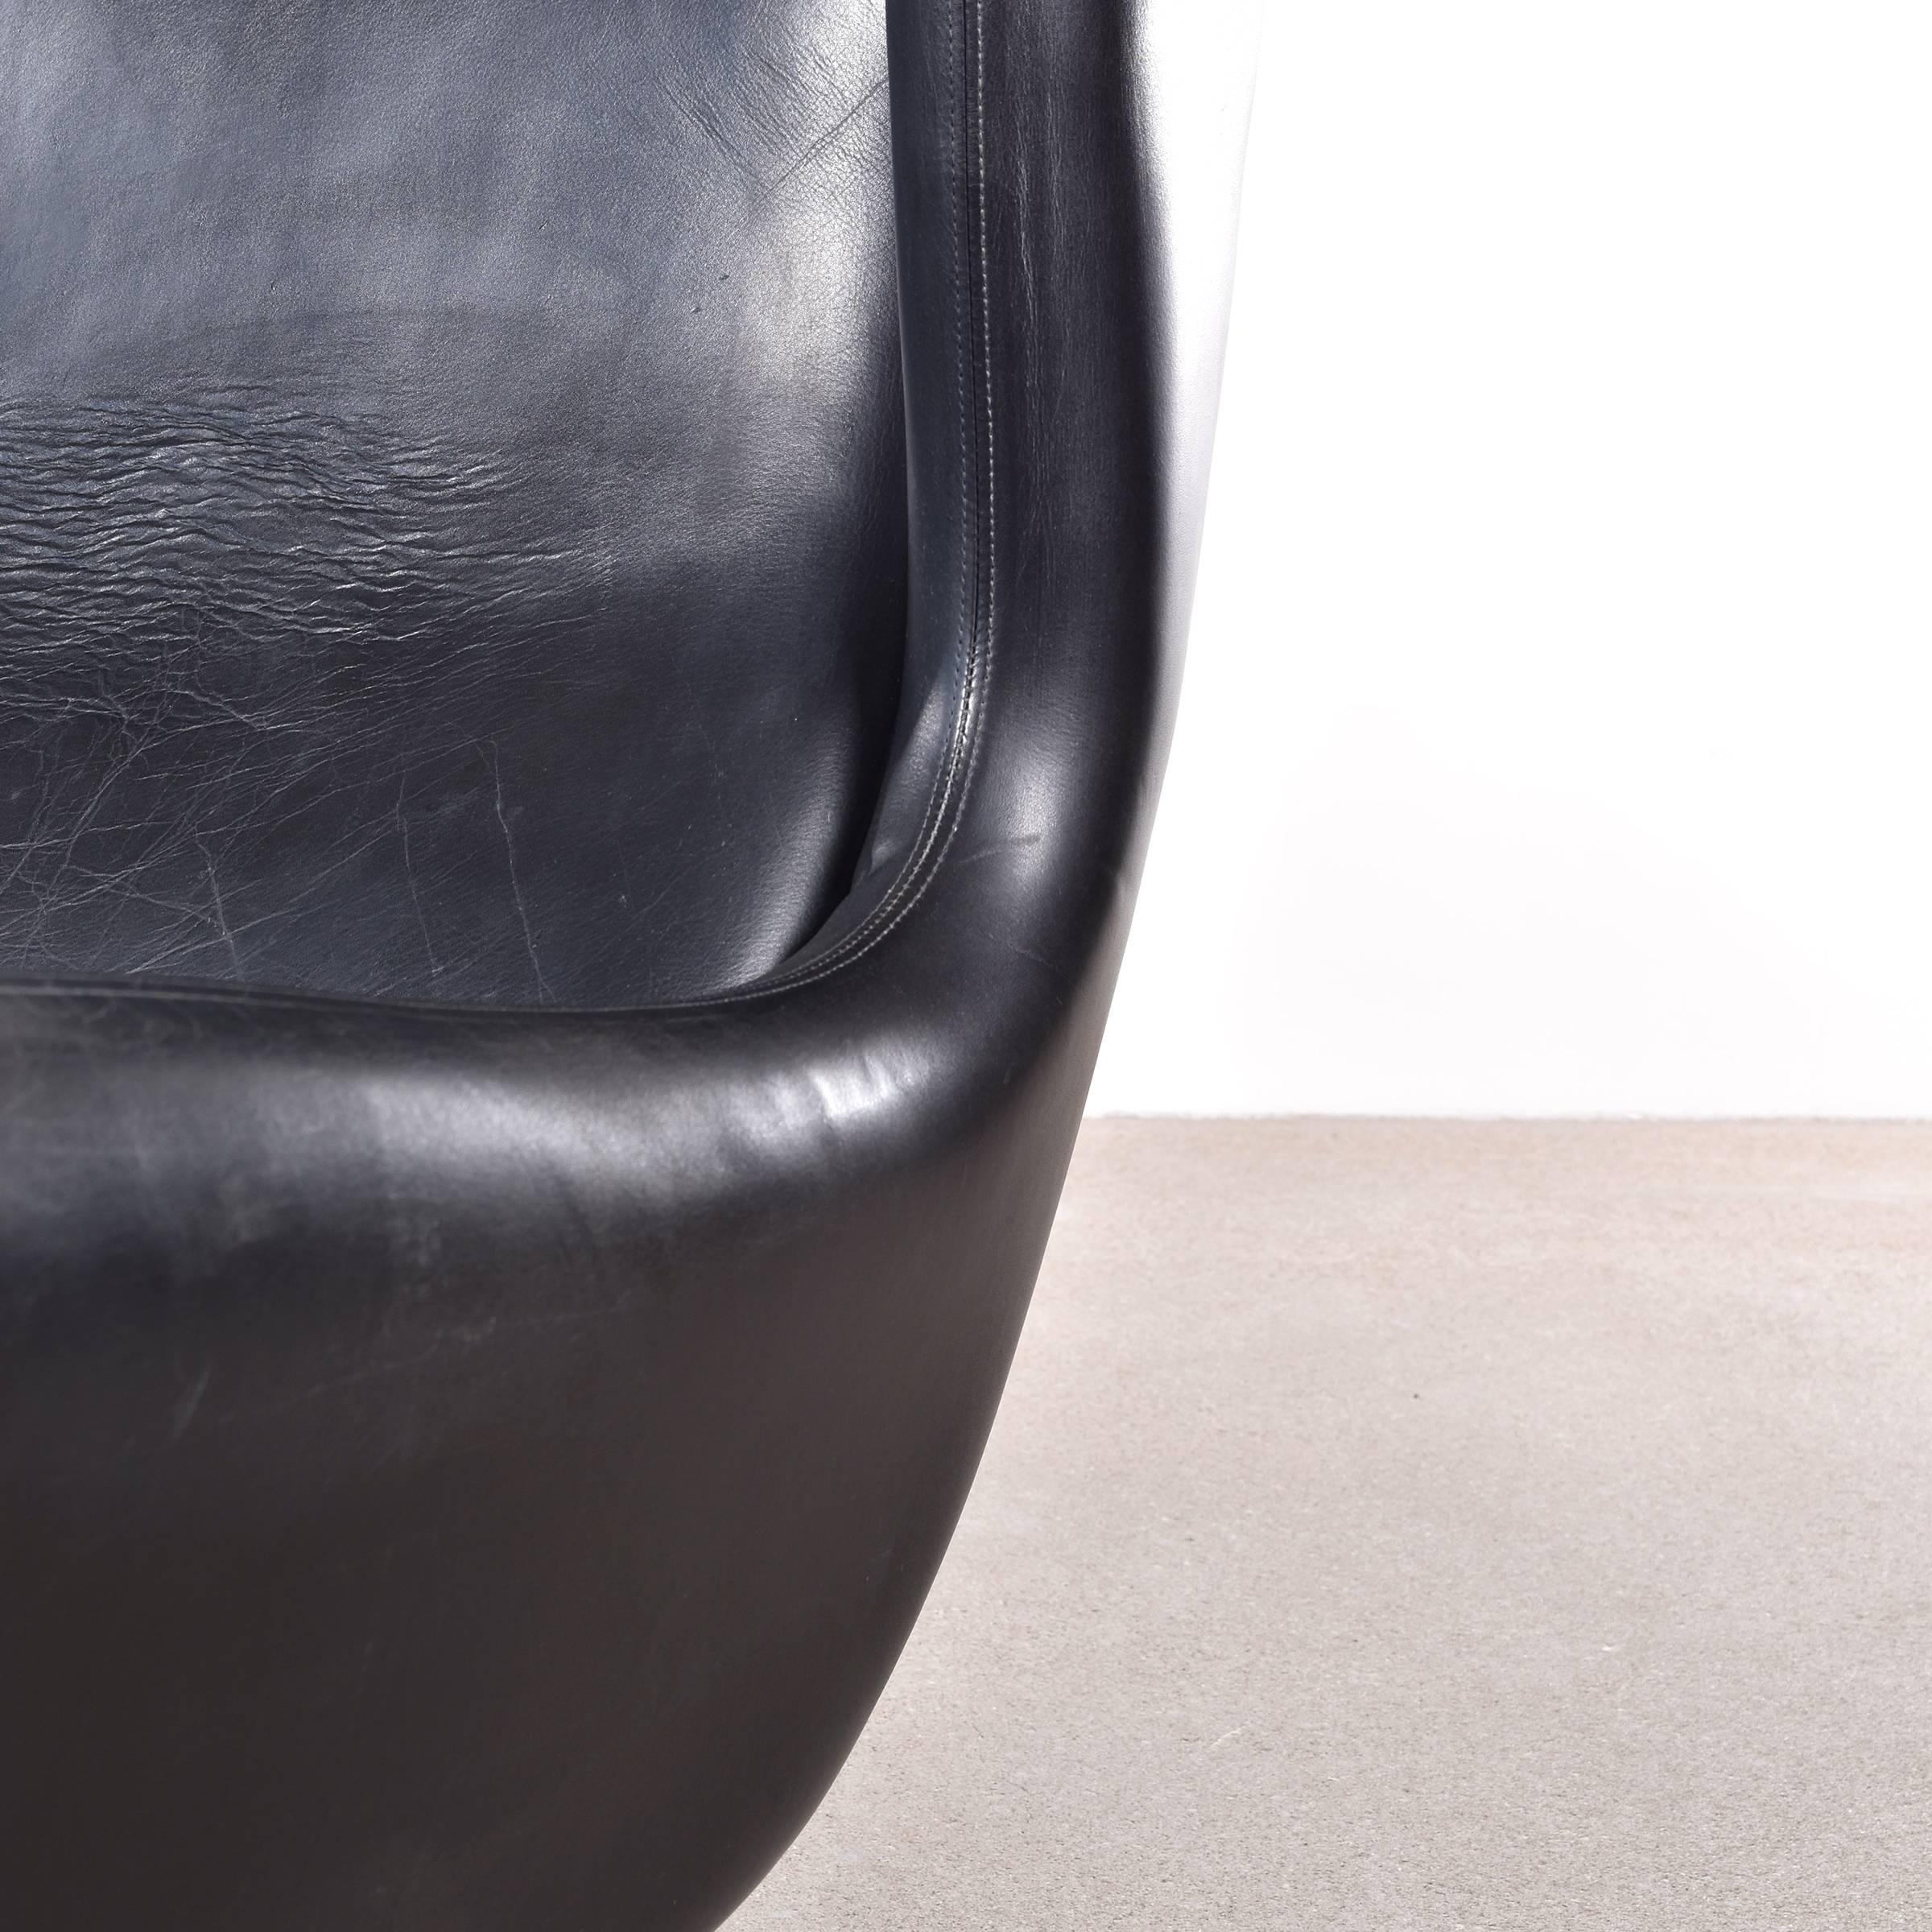 Leather Illum Wikkelsø Model 110 Lounge Chair for Søren Willadsen